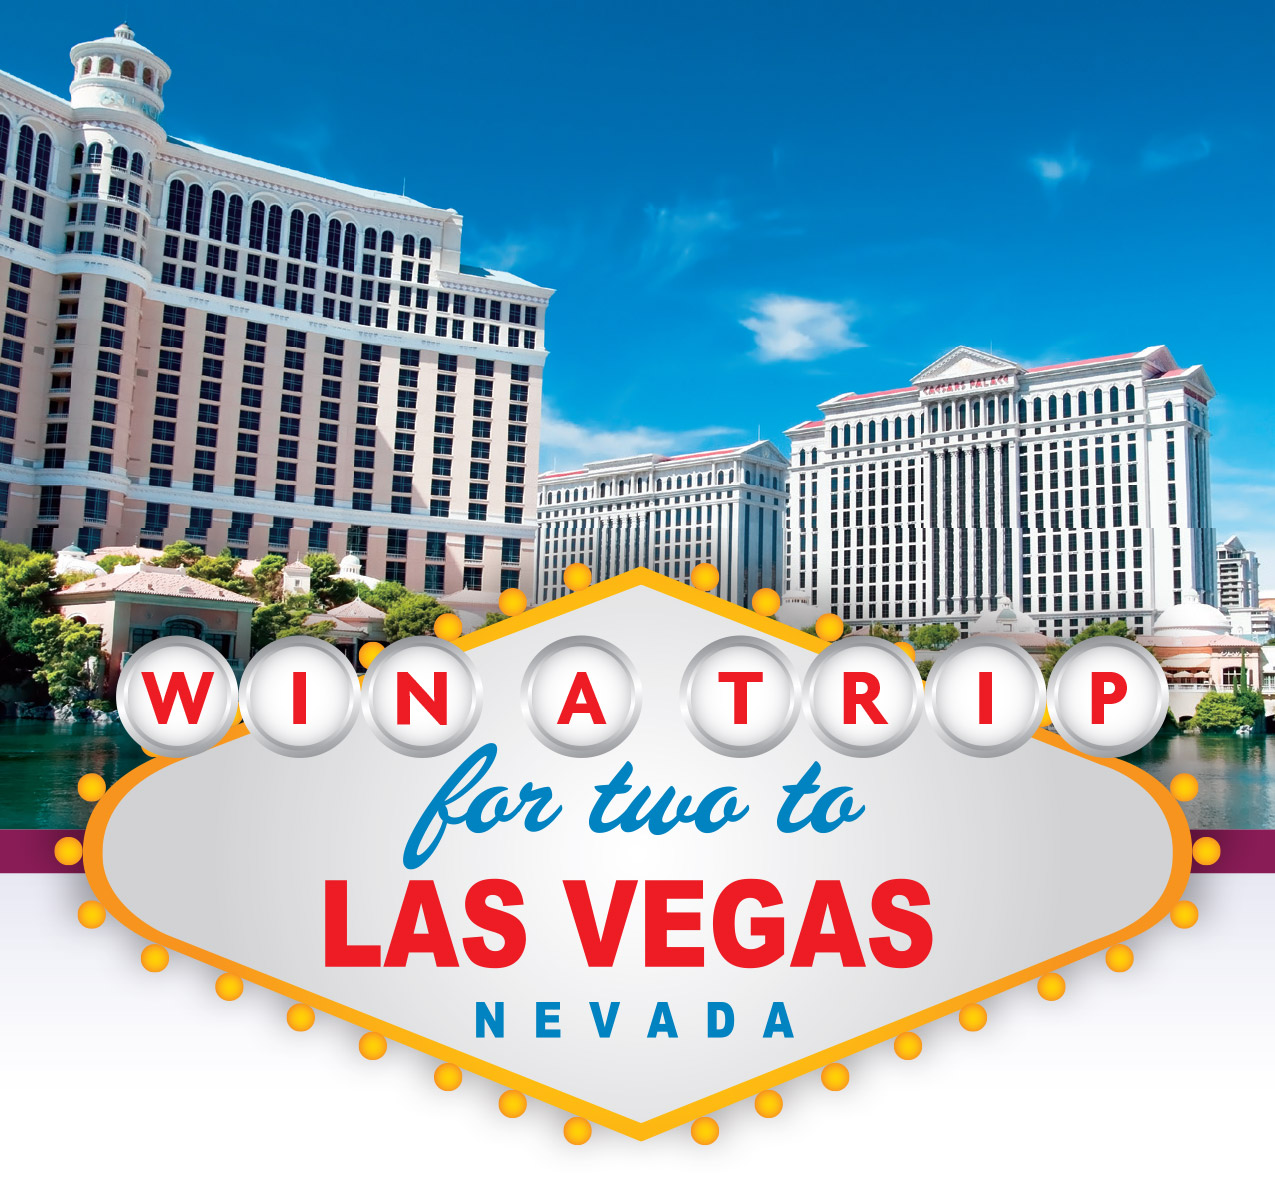 A landscape picture of Las Vegas woth a Trip promotion